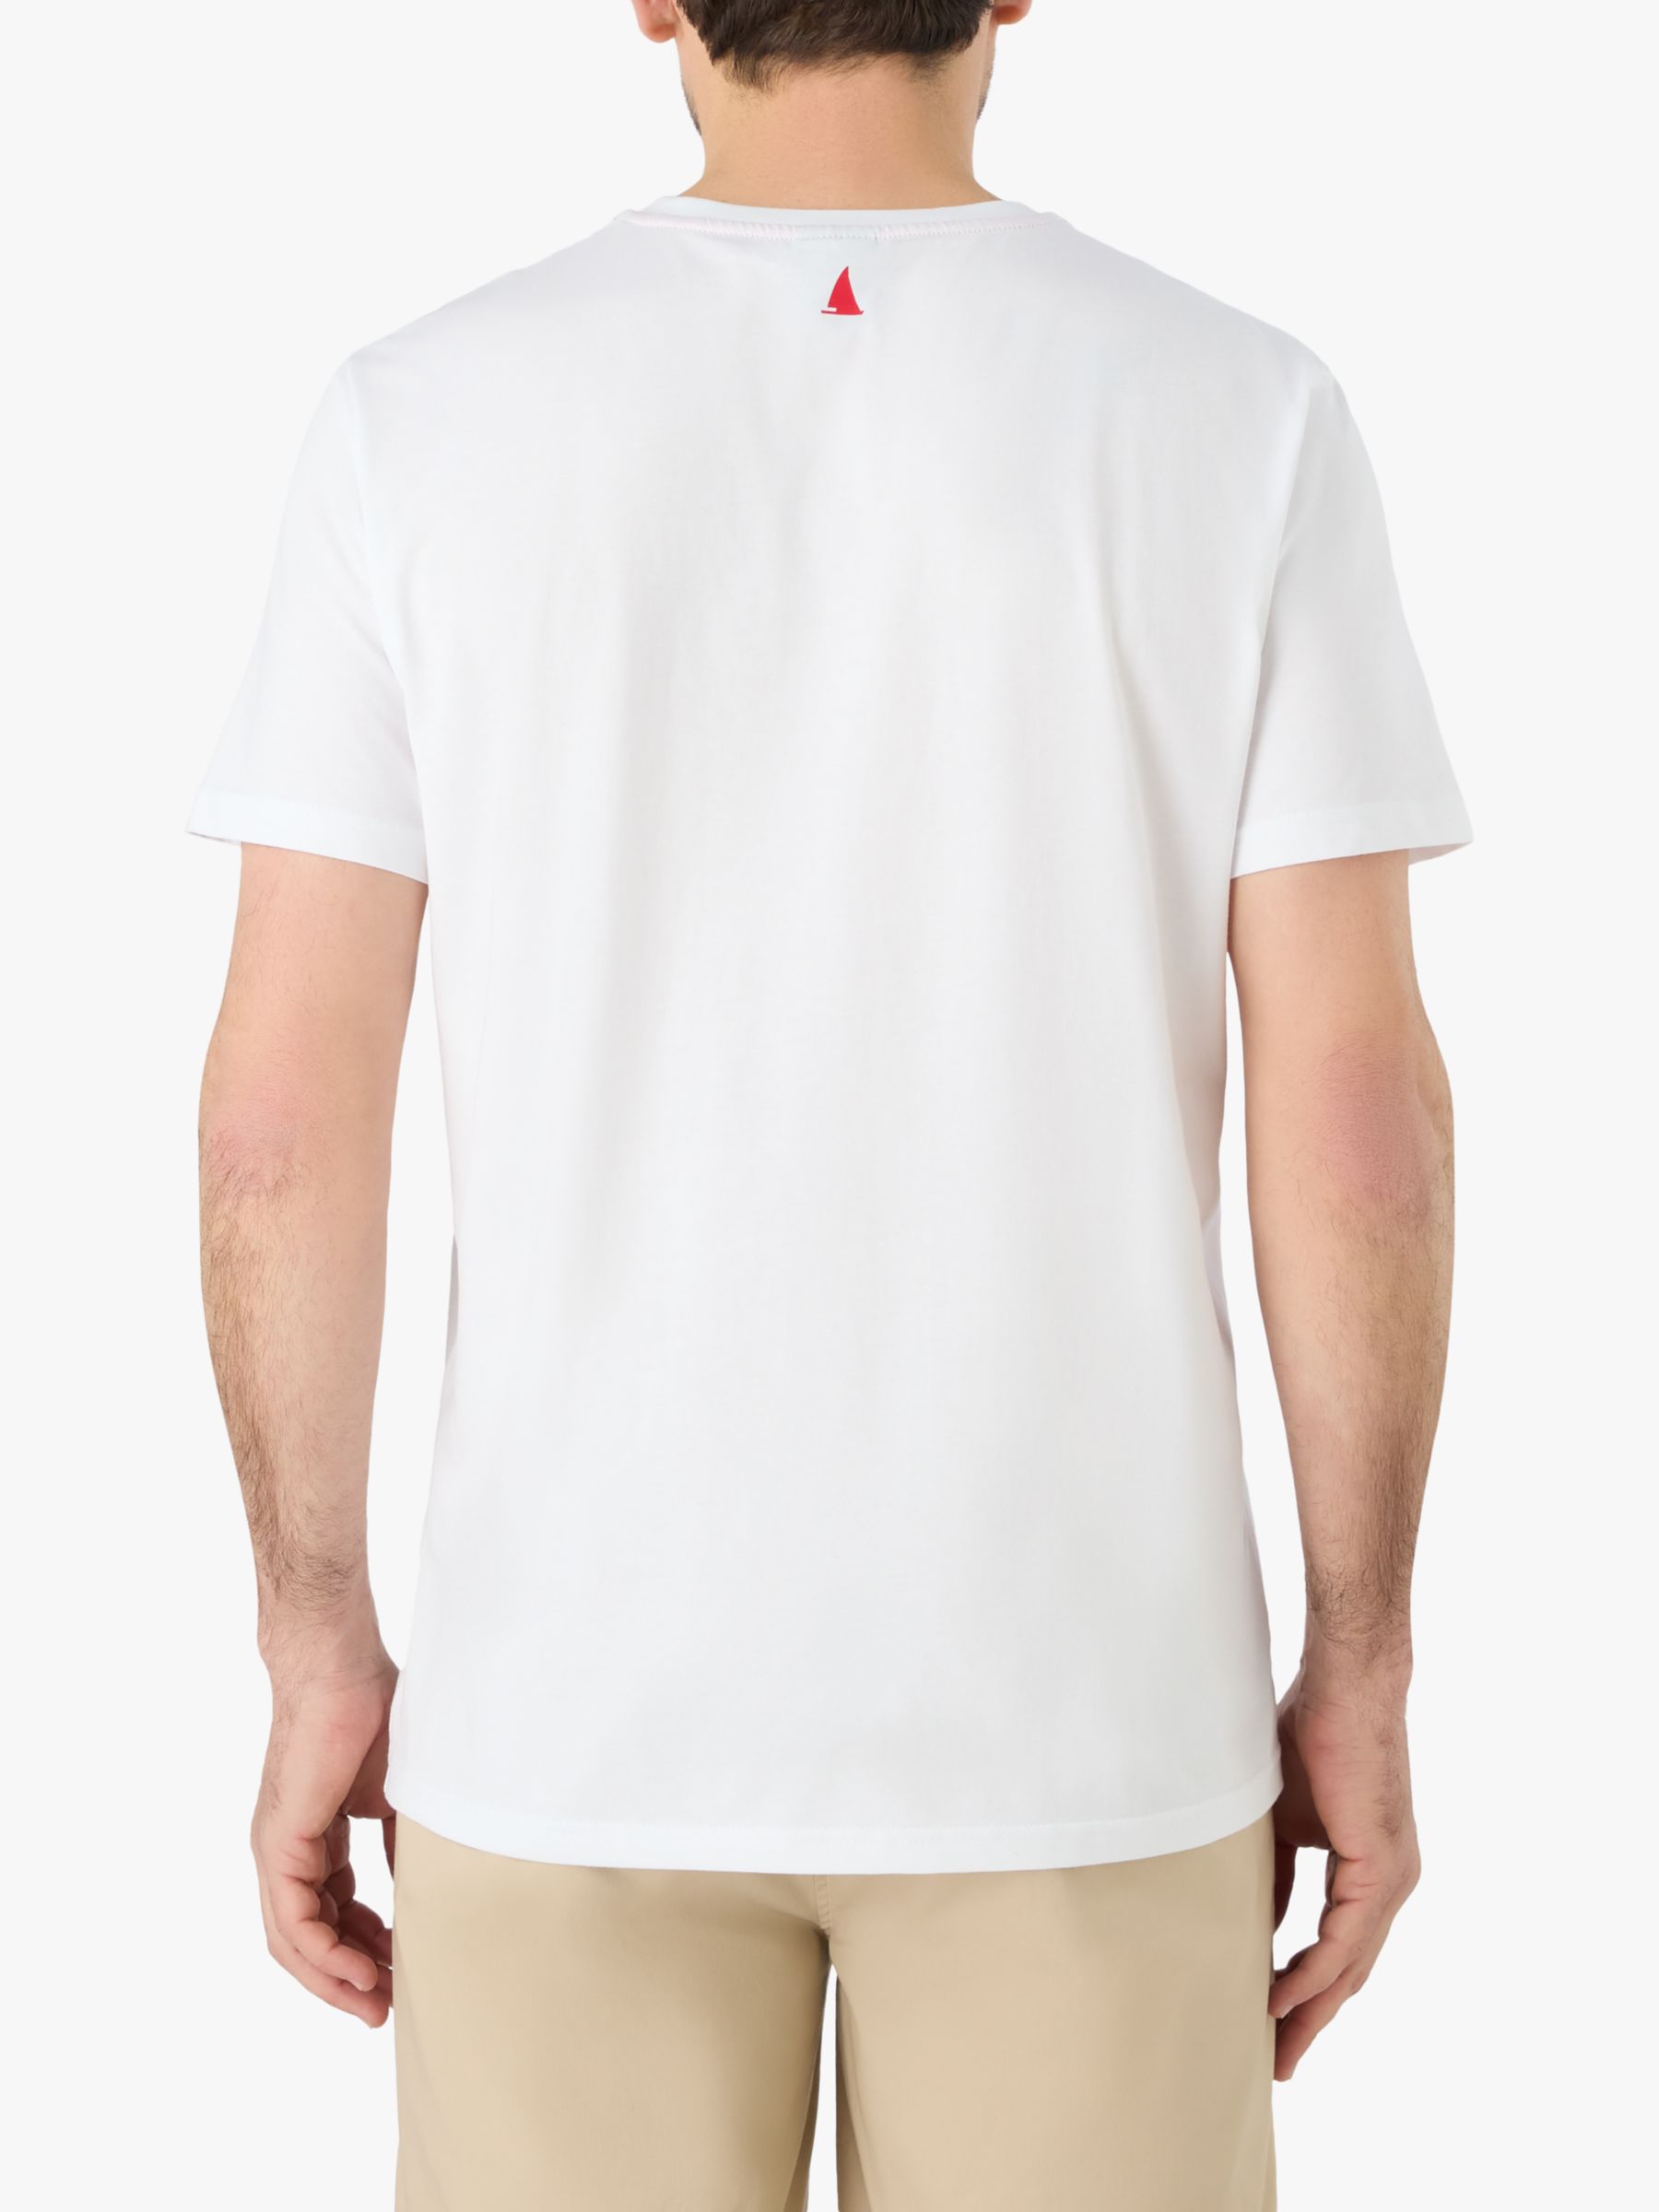 Musto Nautical Short Sleeve T-Shirt, White, M